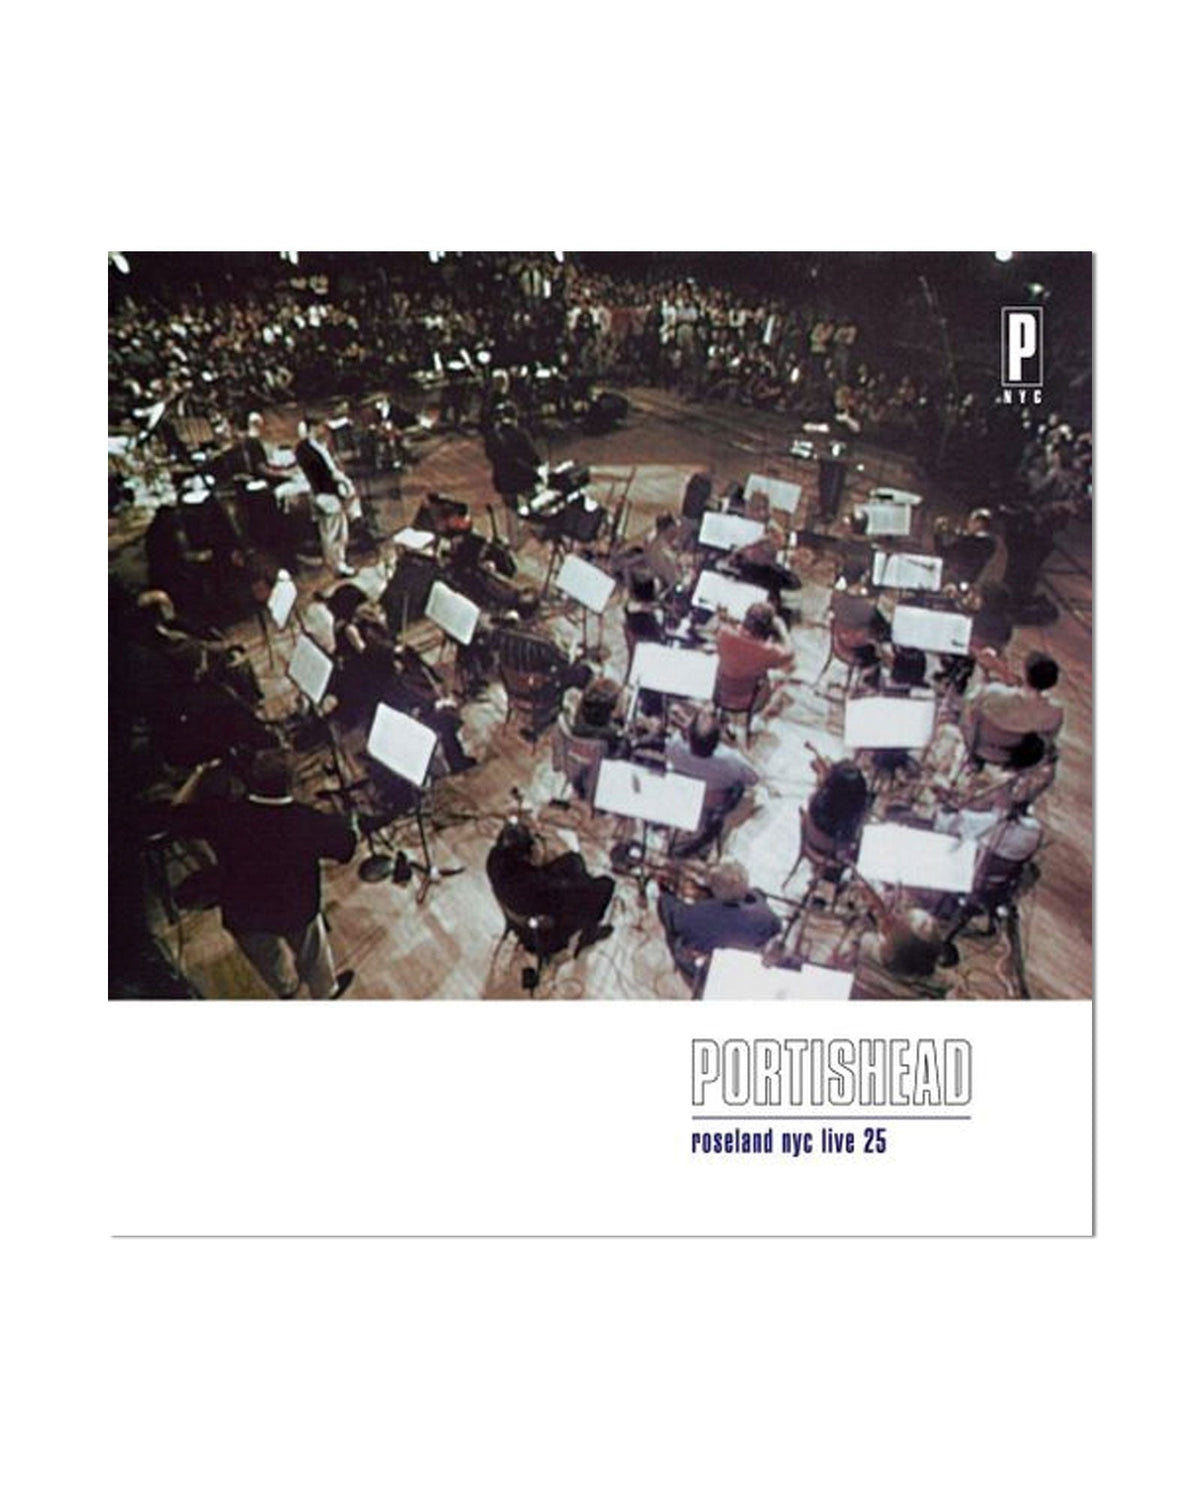 Portishead - CD "Roseland NYC Live" (Edición limitada 25 aniversario) - D2fy · Rocktud - Rocktud